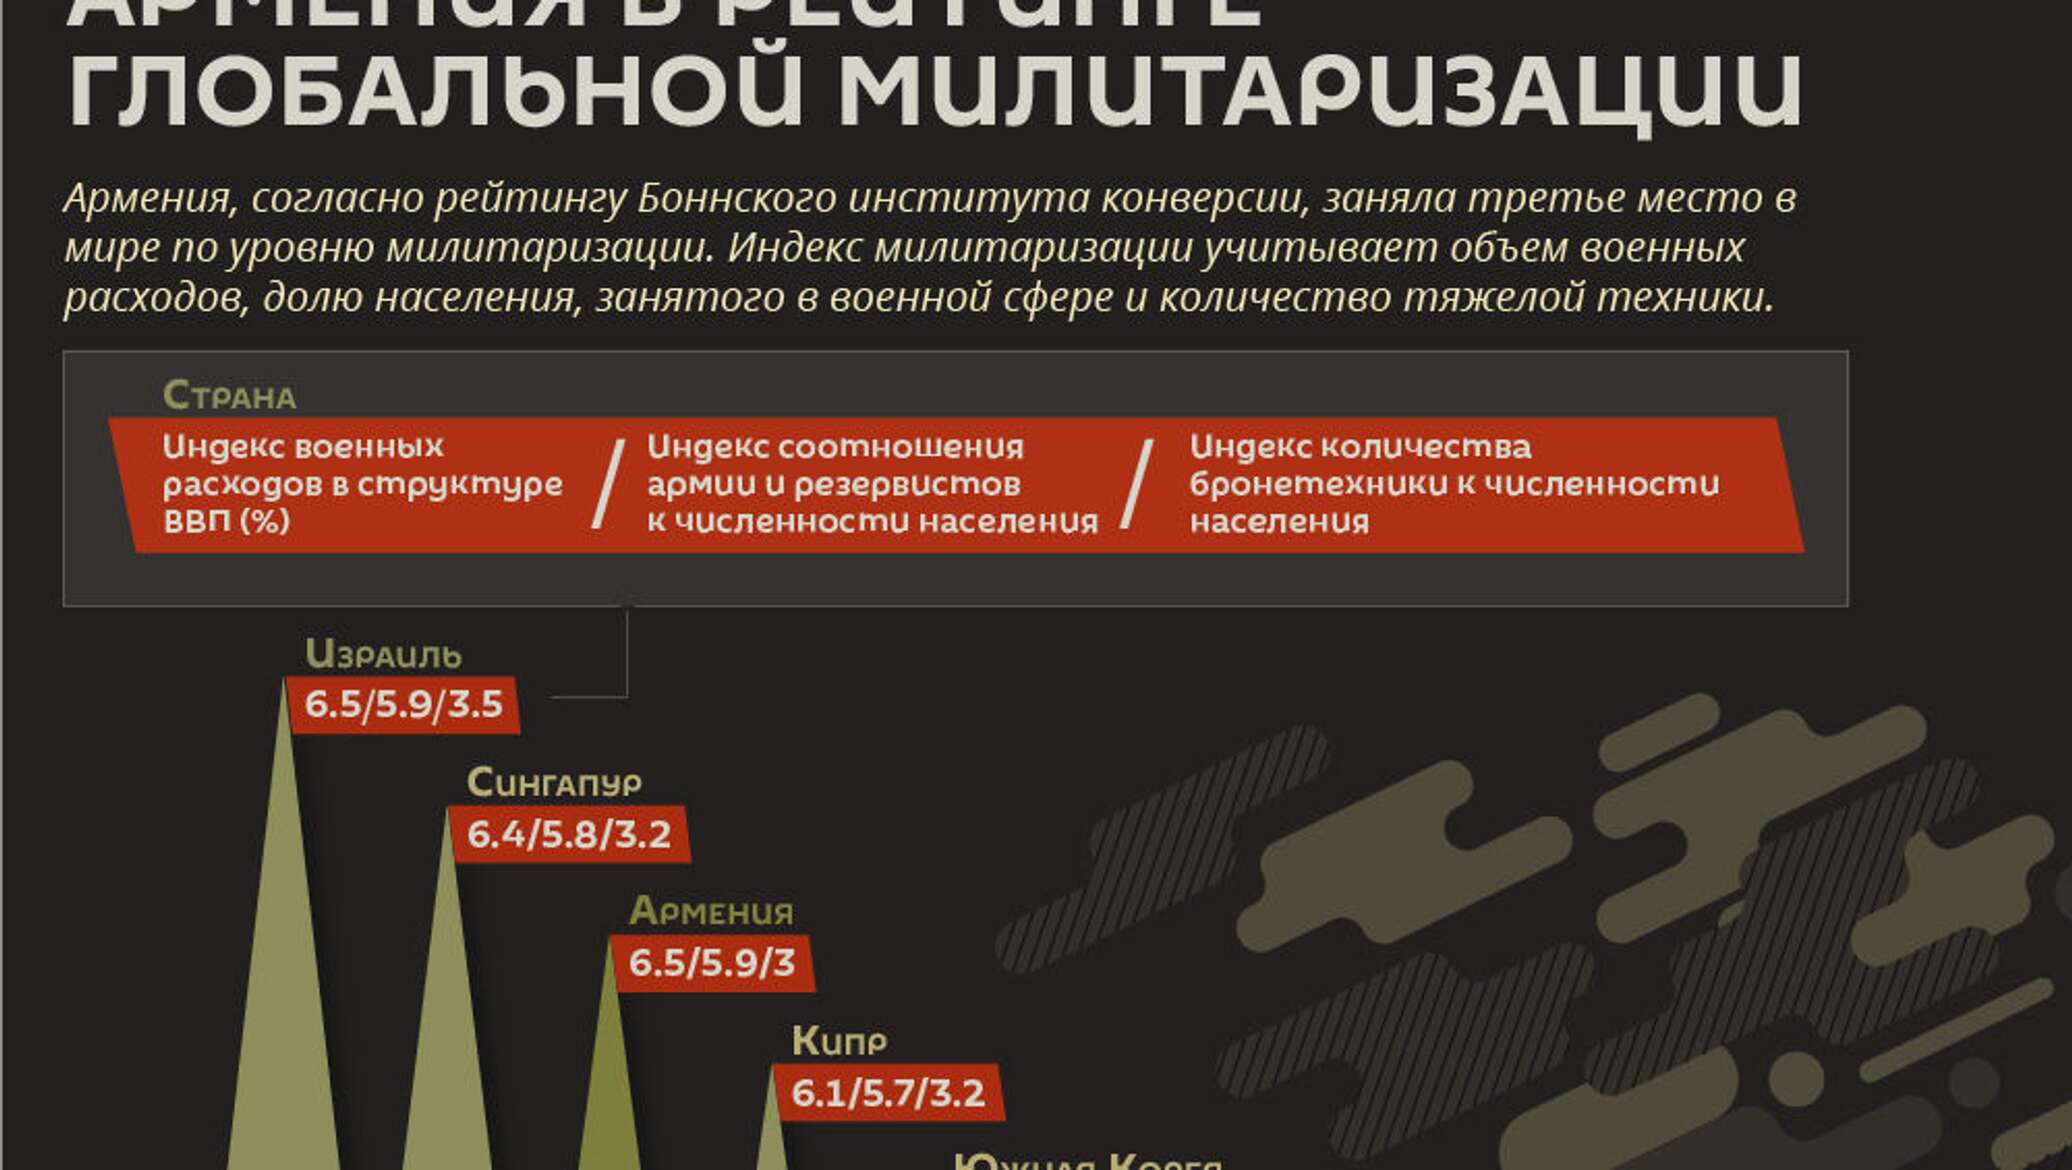 Милитаризация страны это. Милитаризация страны. Армения инфографика. Экономика Армении инфографика. Военная безопасность инфографика 2020.